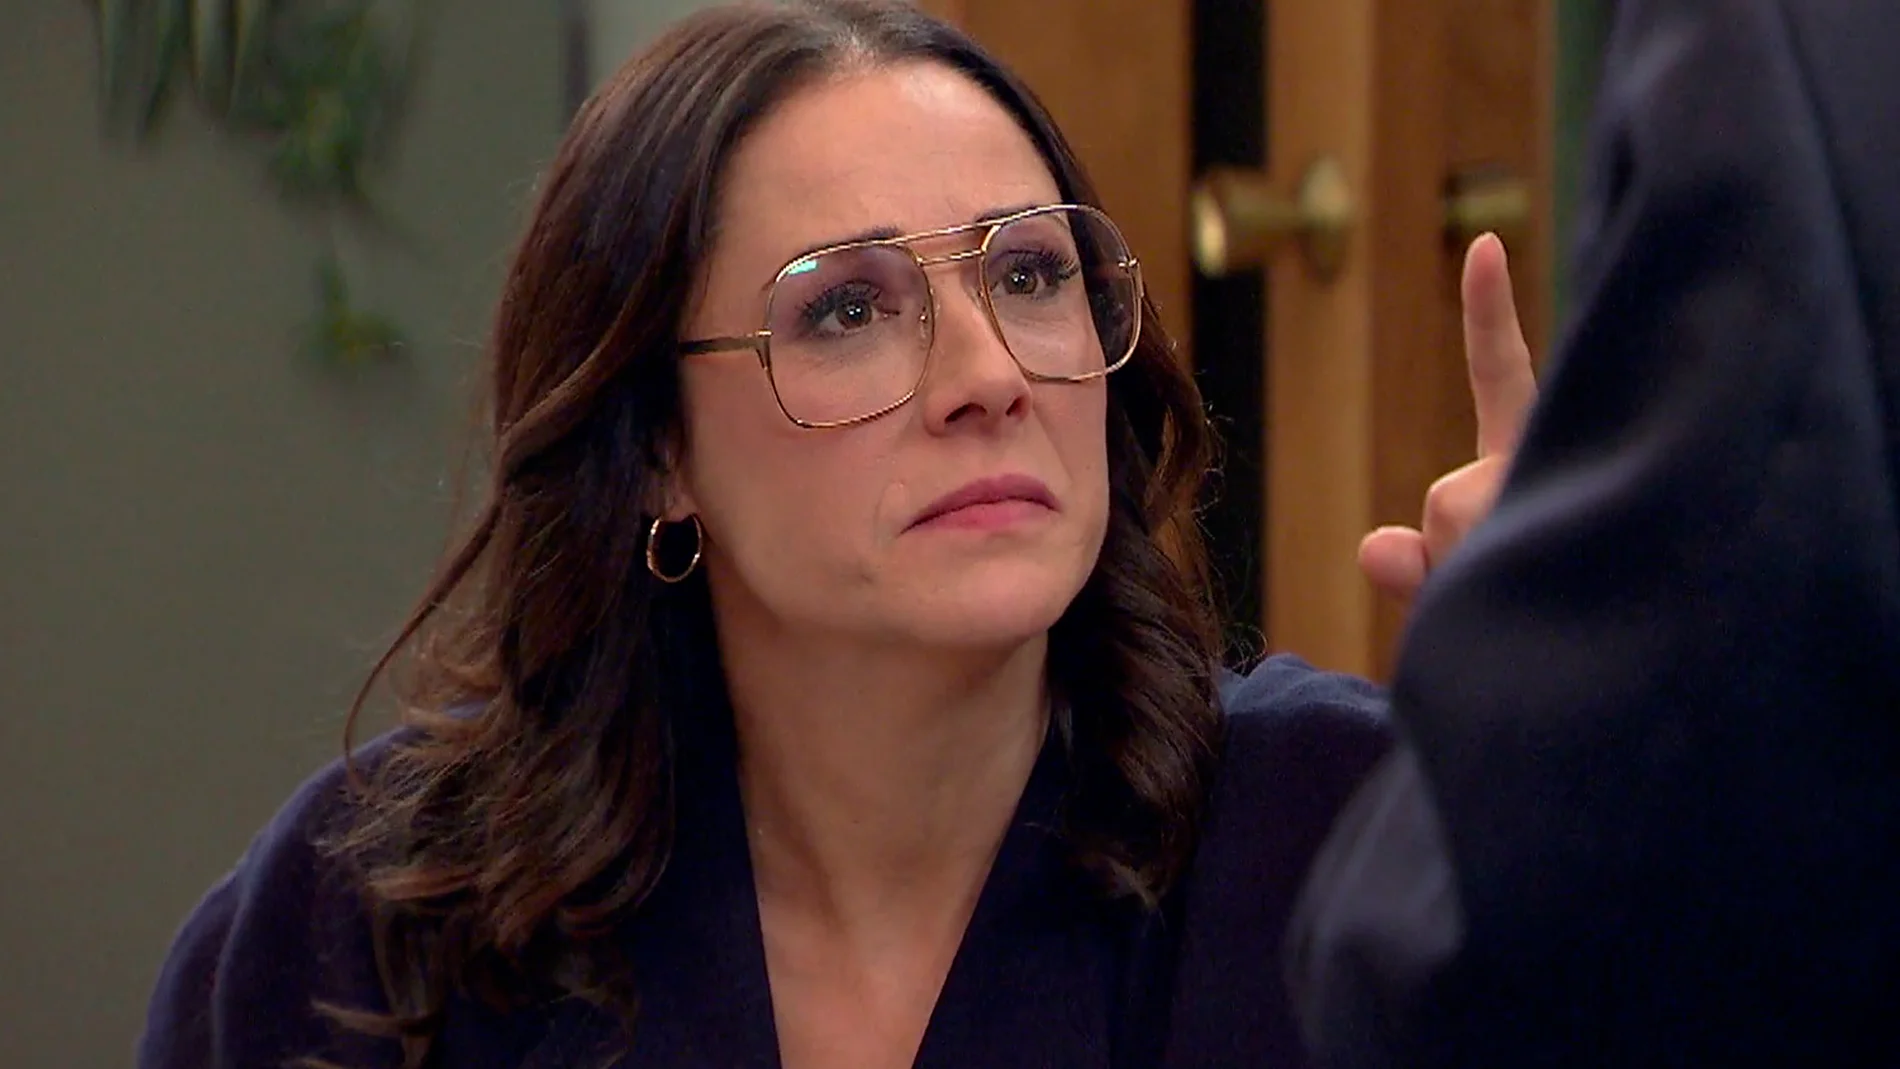 Cristina destroza el corazón de Quintero en una fuerte discusión: "Tú no eres mi padre"